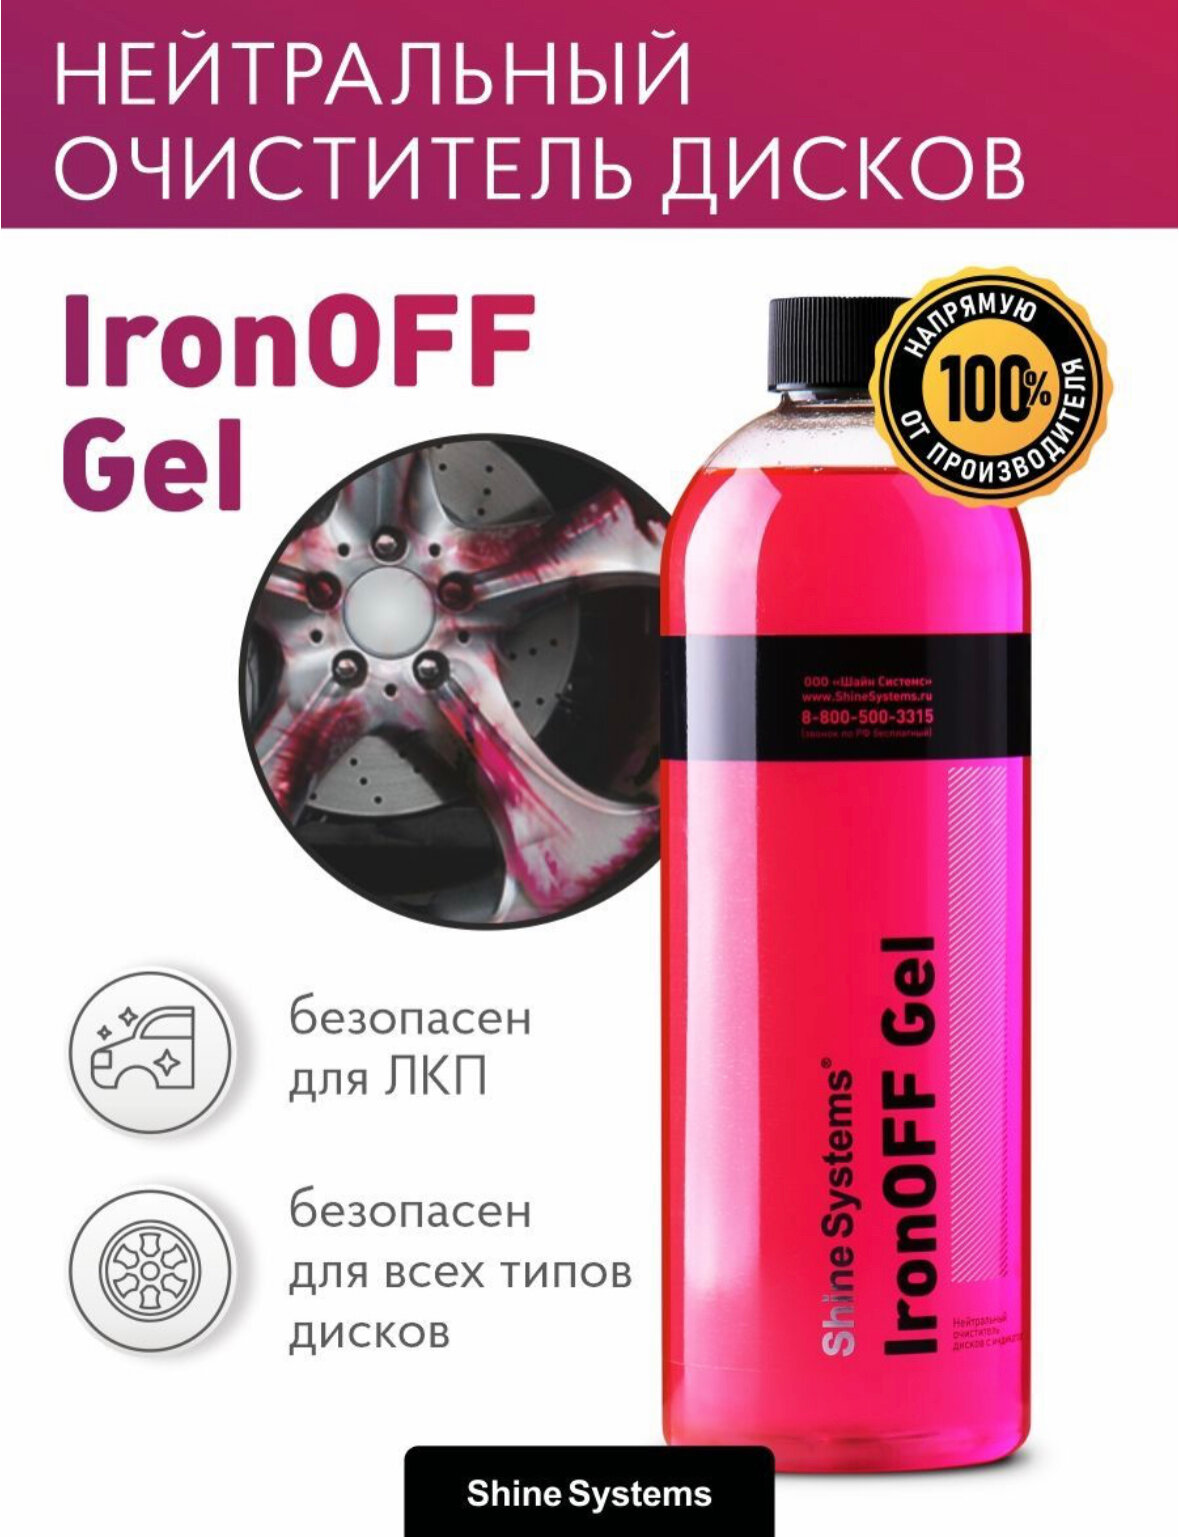 IronOFF Gel - нейтральный очиститель дисков с индикатором Shine Systems, 750 мл